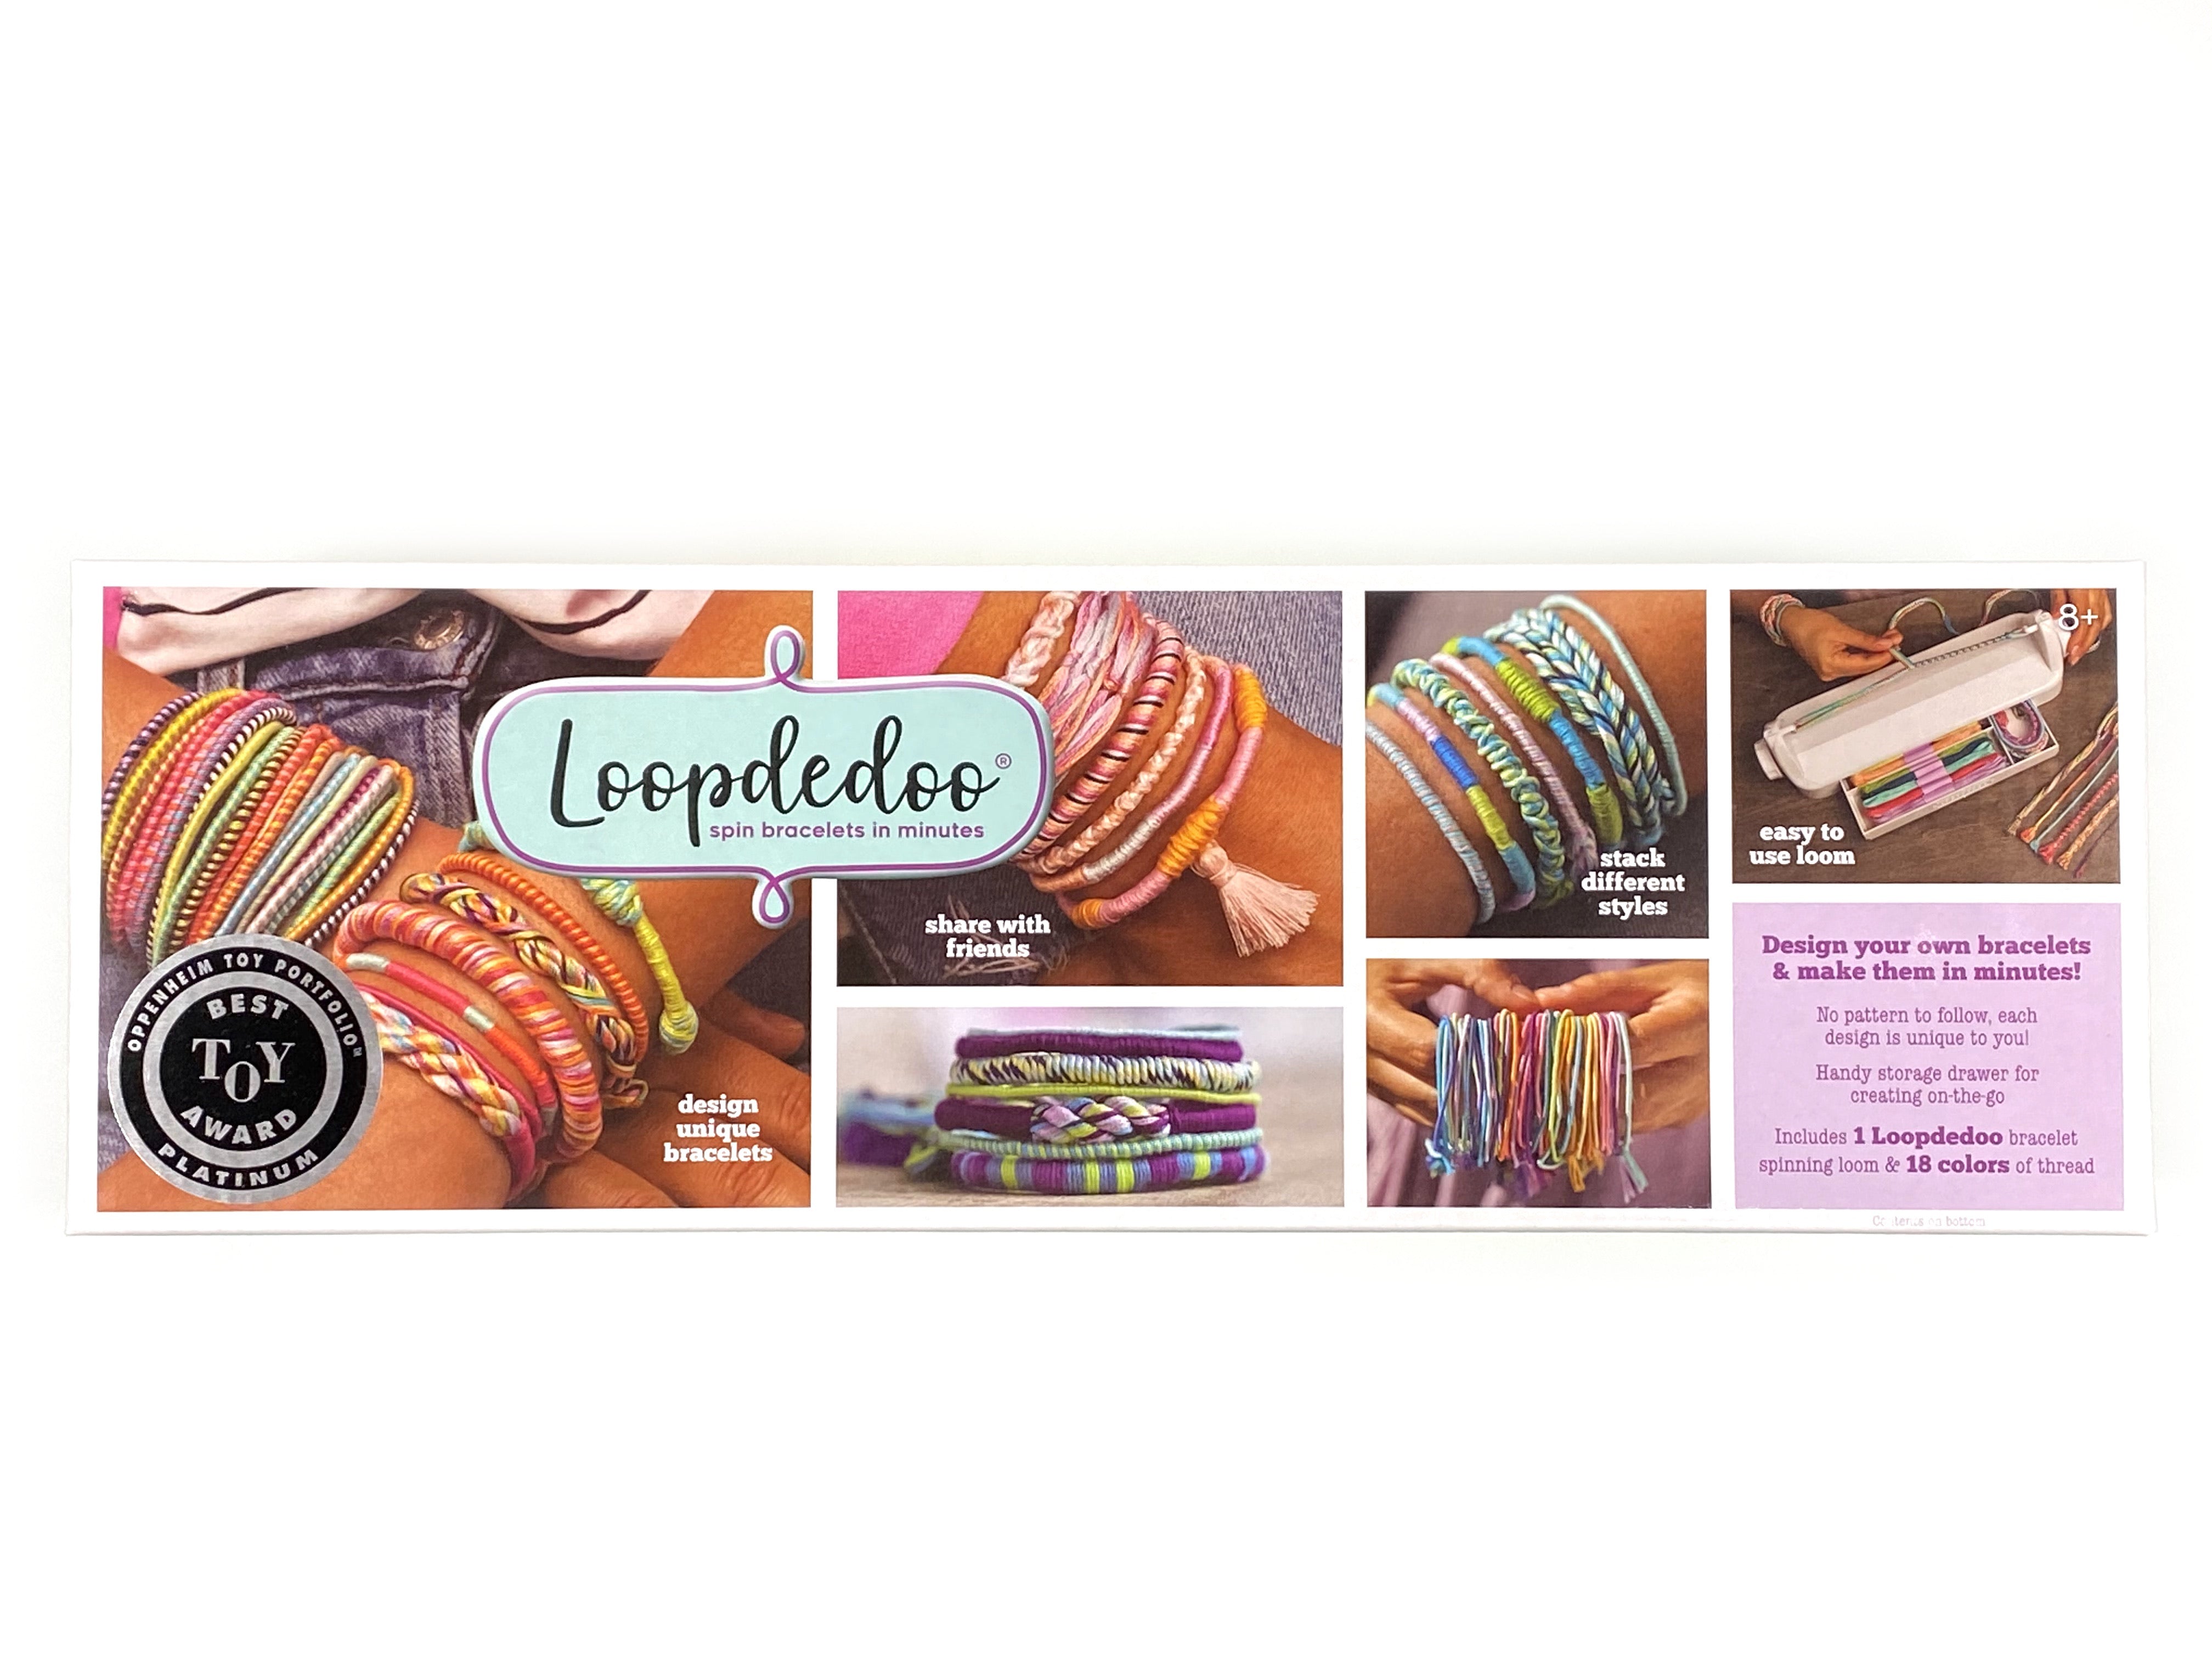 Loopdedoo Bracelet maker - Loopdedoo Bracelets Tutorial (How to